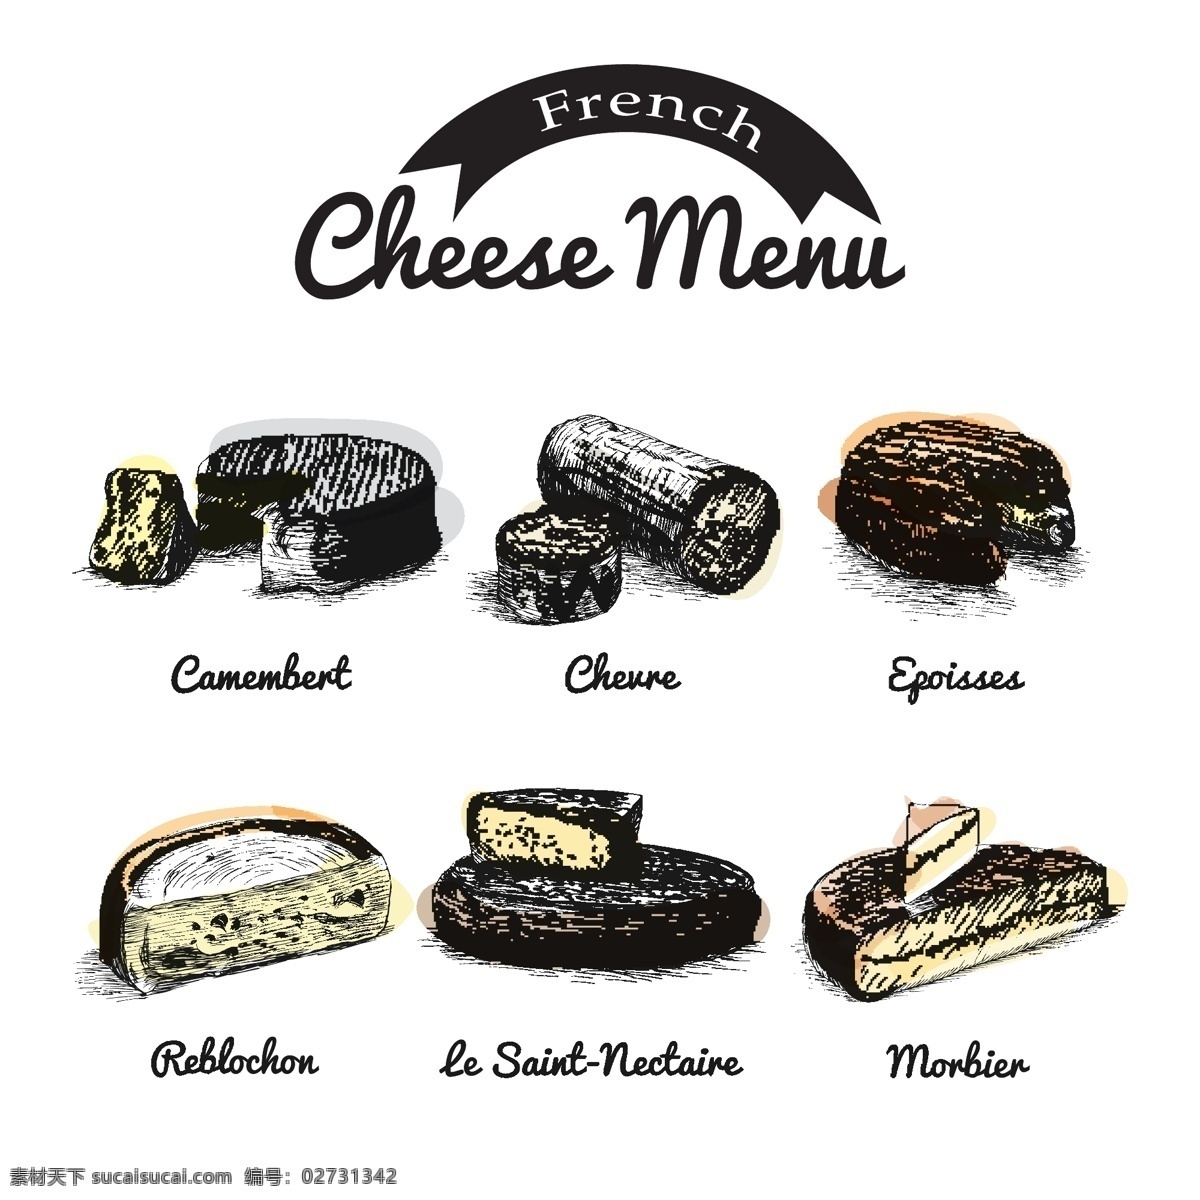 款 复古 彩绘 法国 奶酪 矢量 卡蒙贝尔奶酪 山羊奶酪 艾波瓦斯奶酪 半软淡味干酪 圣 耐克 泰尔 莫尔比耶奶酪 食物 矢量图